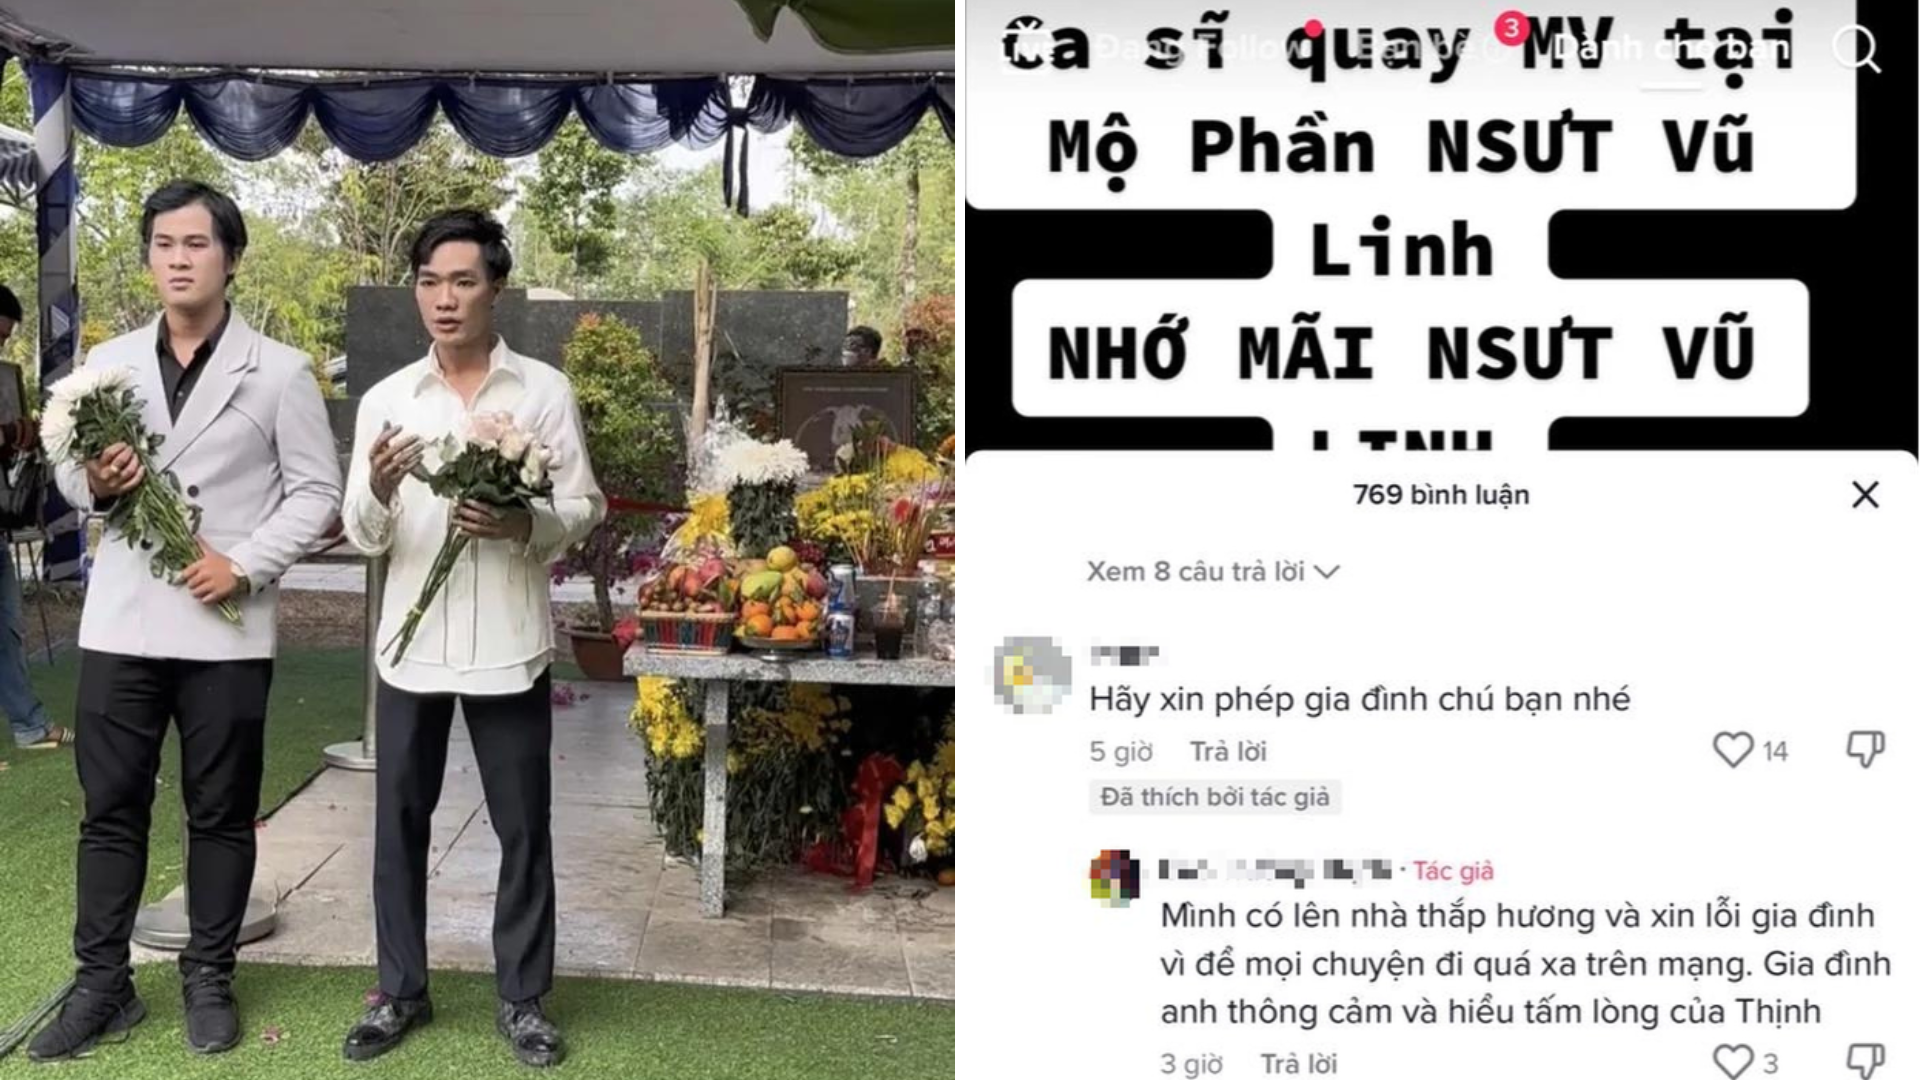 Con trai cố NSƯT Chiêu Hùng lên tiếng về hình ảnh gây tranh cãi khi quay MV trước mộ cố NSƯT Vũ Linh